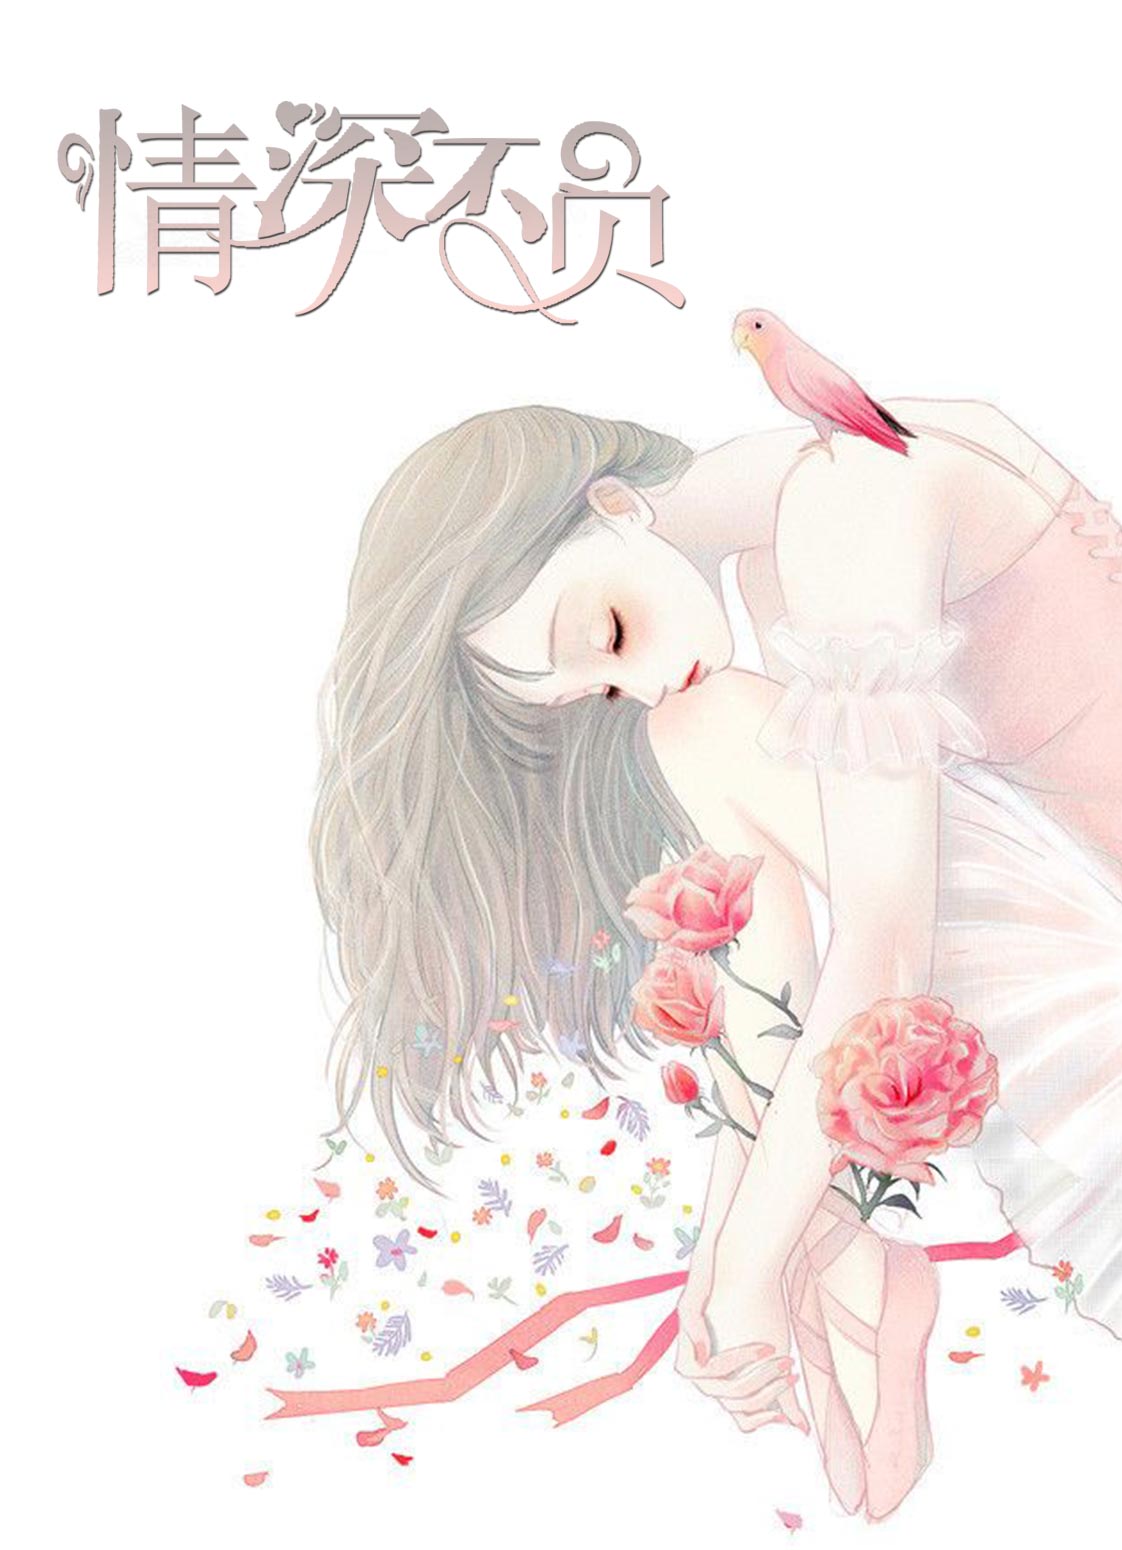 情深不负(苏青胡佩)小说阅读作者一夜锁情